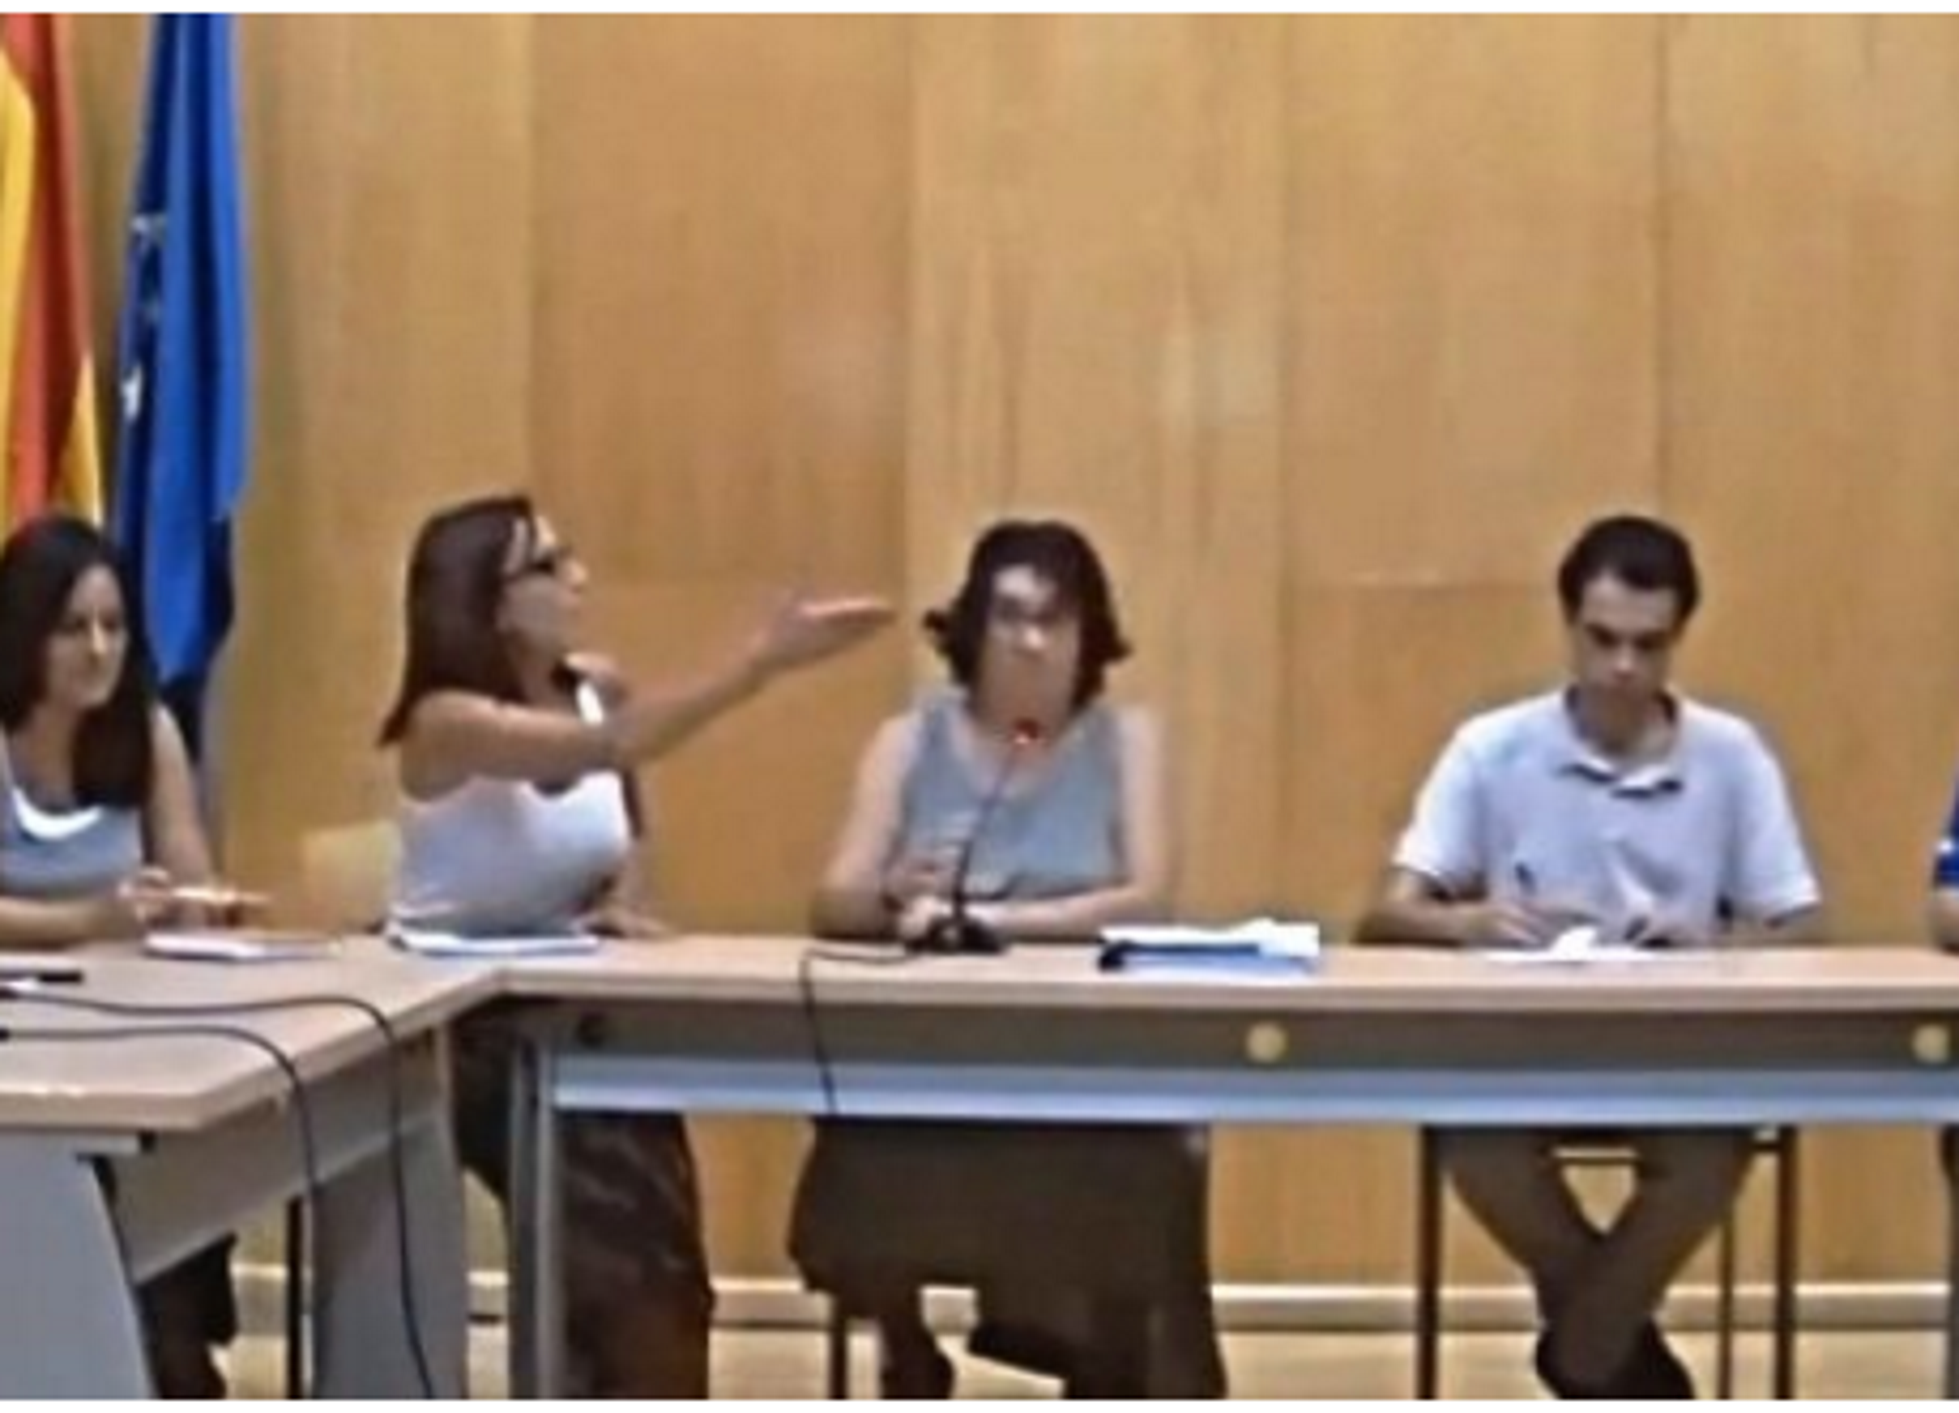 Una concejal del PP obliga a hablar castellano: "Lo dice la Constitución"